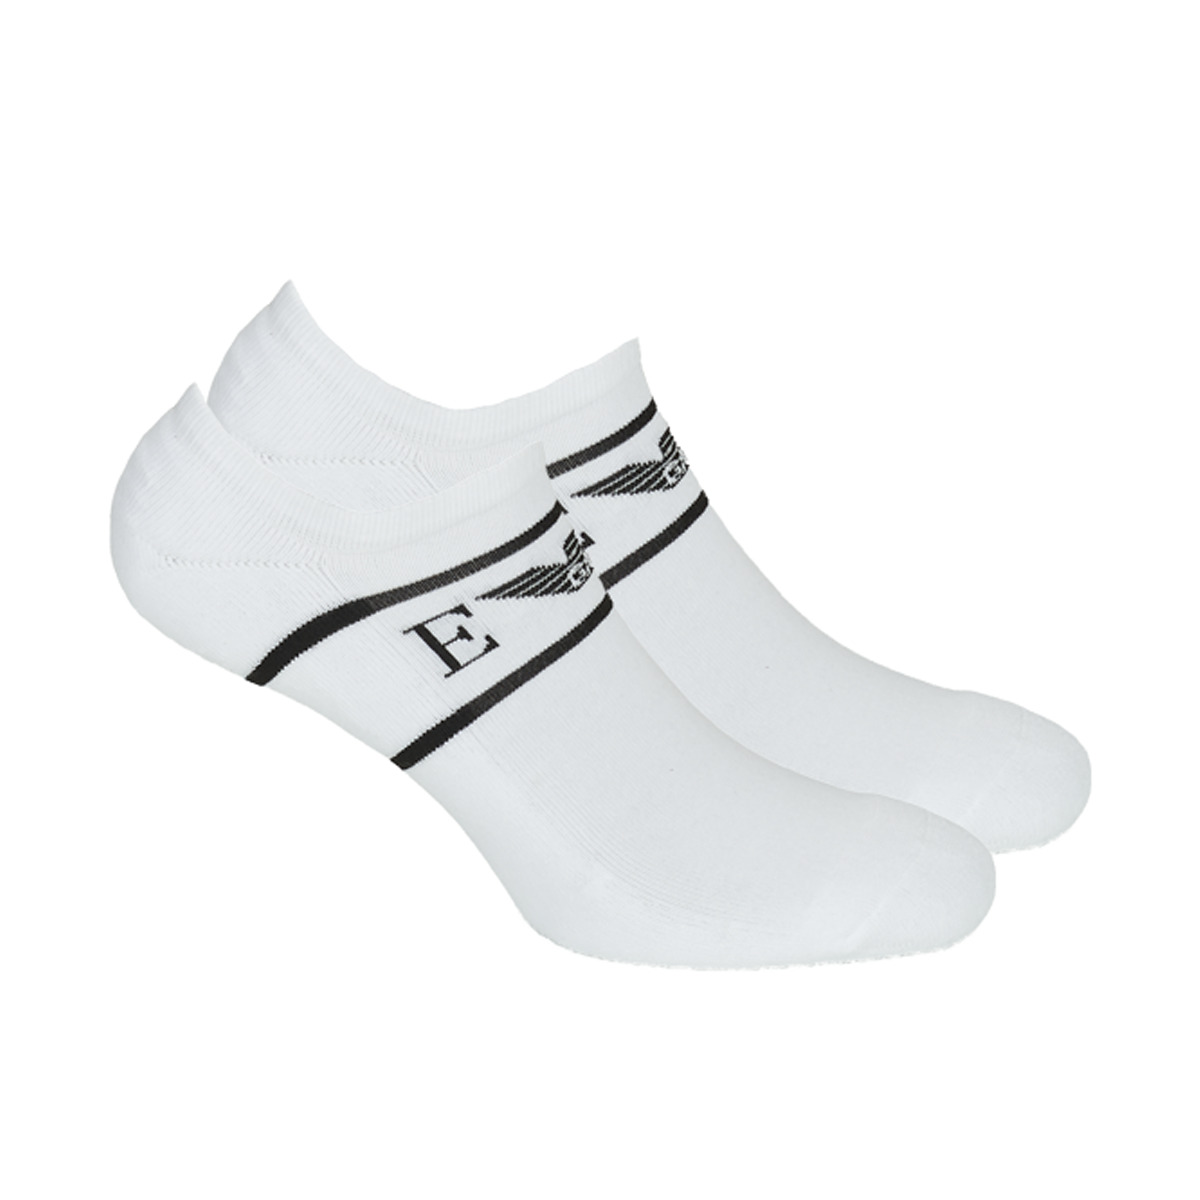 Socks Emporio Armani 2R300-306228-00010